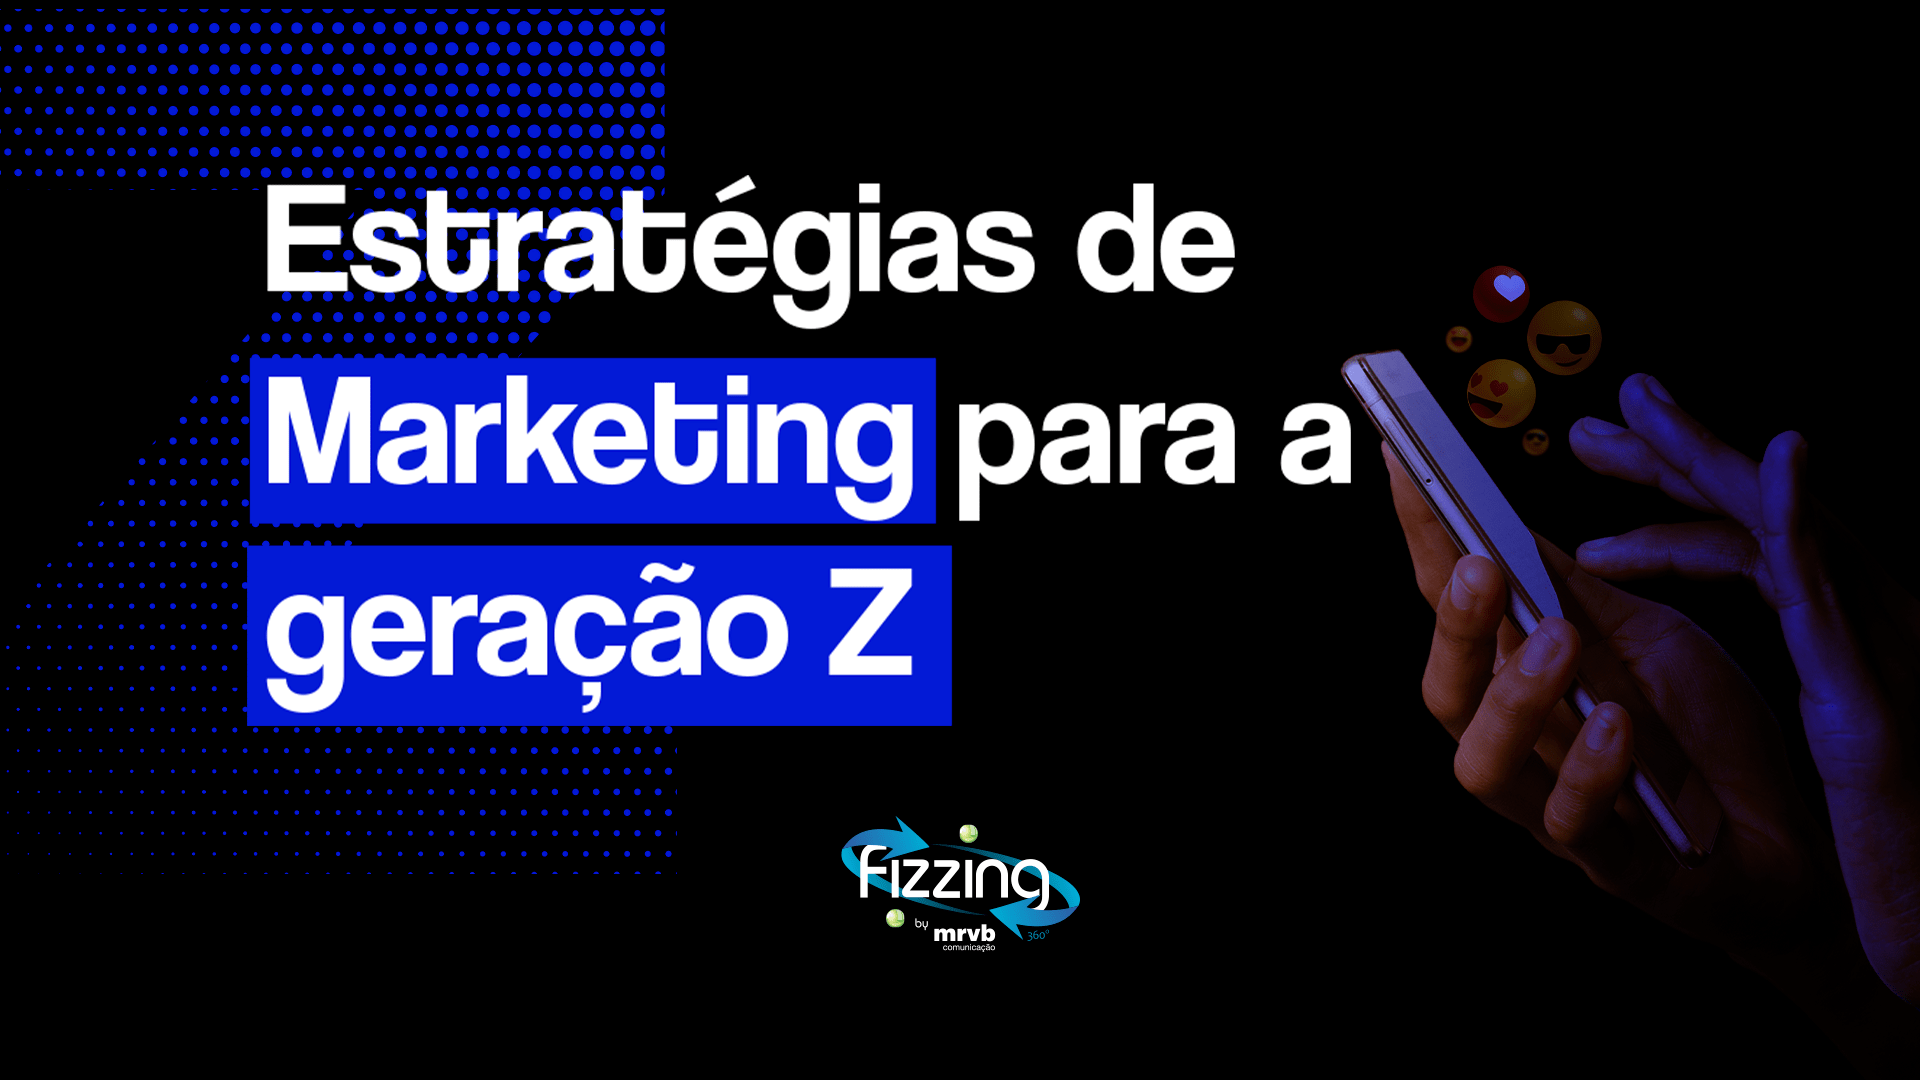 Pessoa mexendo em um samrtphone, em um fundo preto, com emojis saindo do aparelho e o seguinte texto: Estratégias de marketing para a geração Z